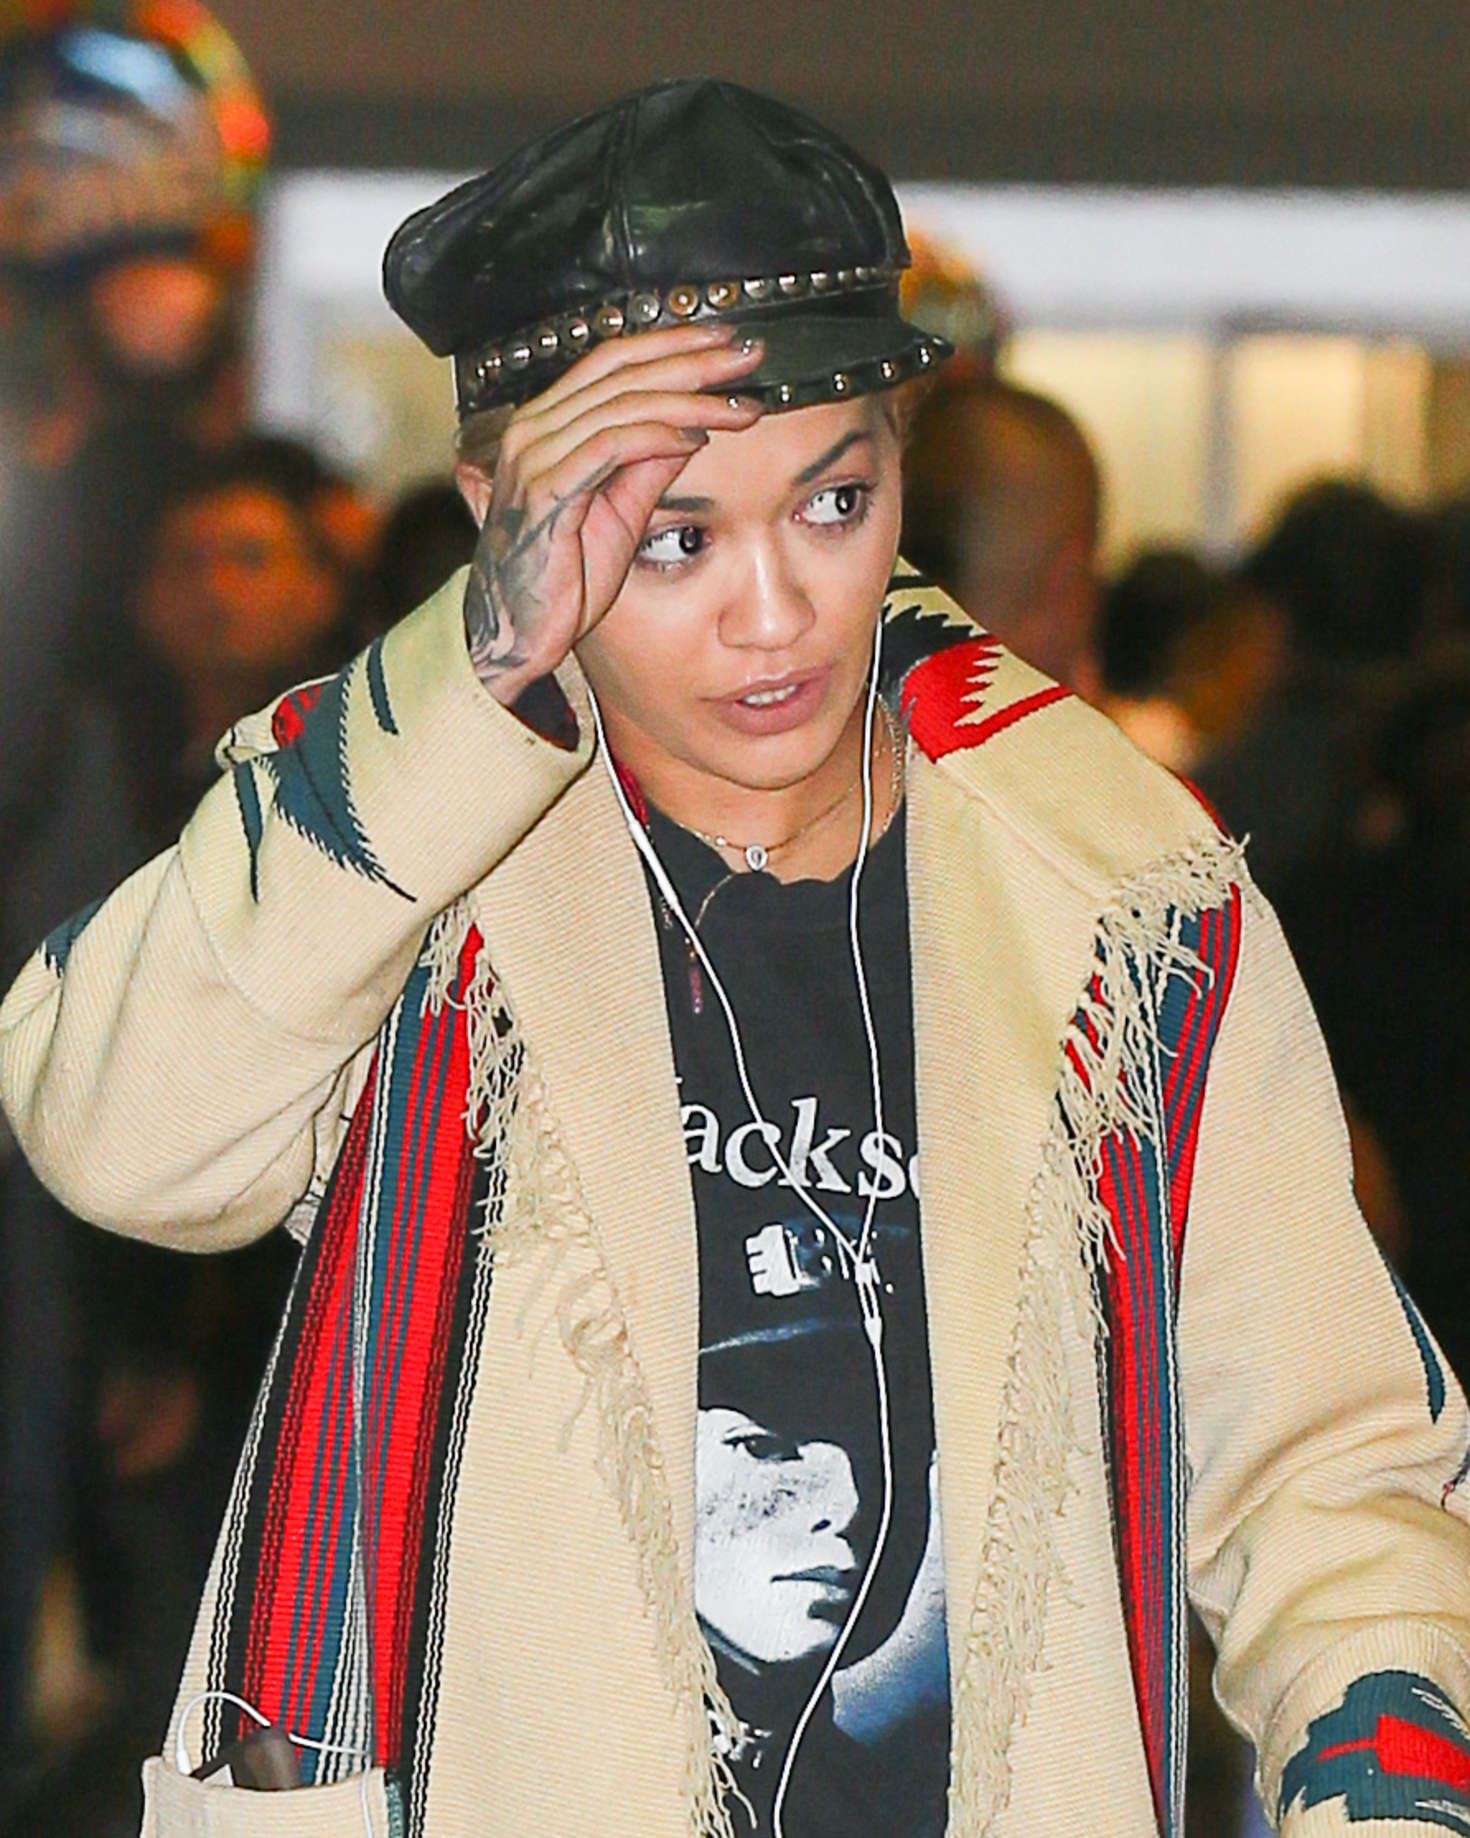 Rita Ora at JFK Airport in NYC